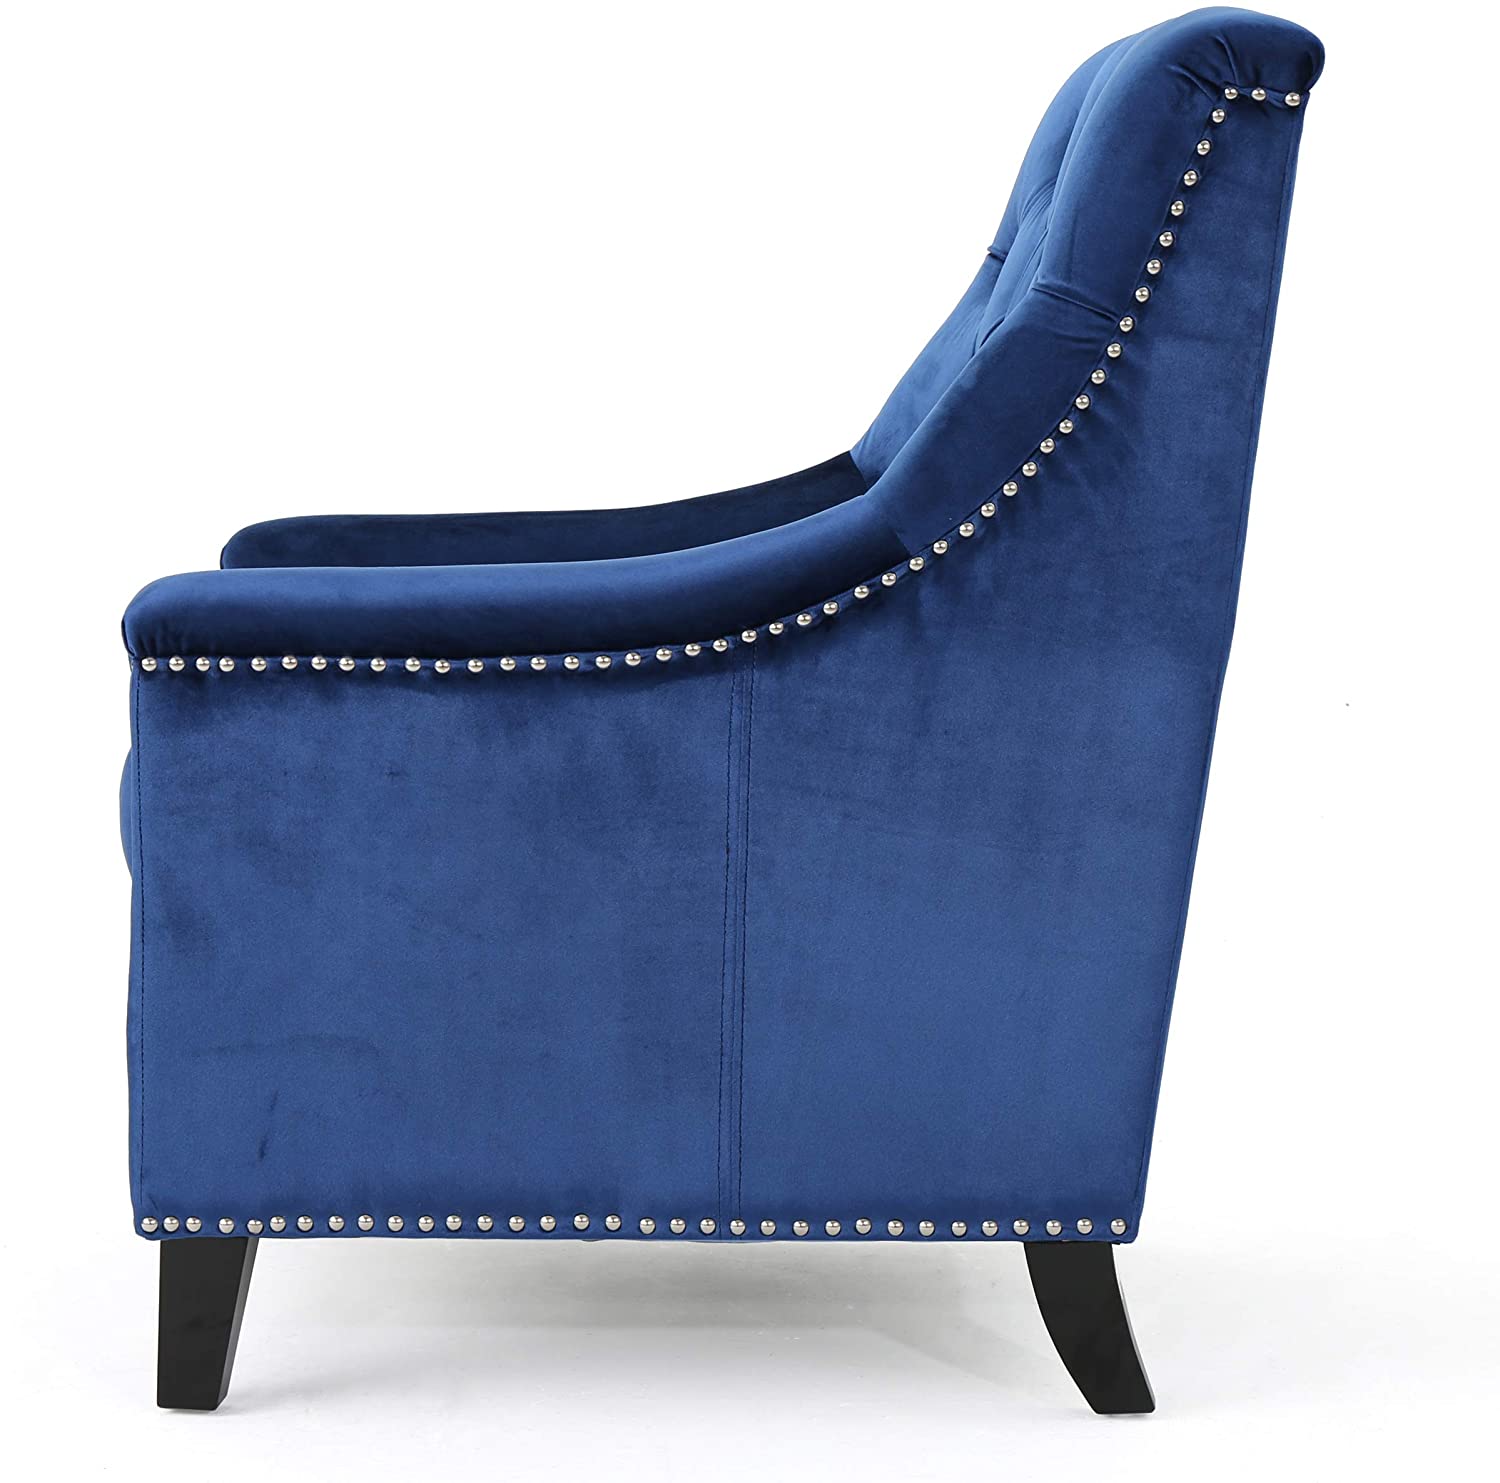 Tufted Back New Velvet Club Chair (Navy Blue